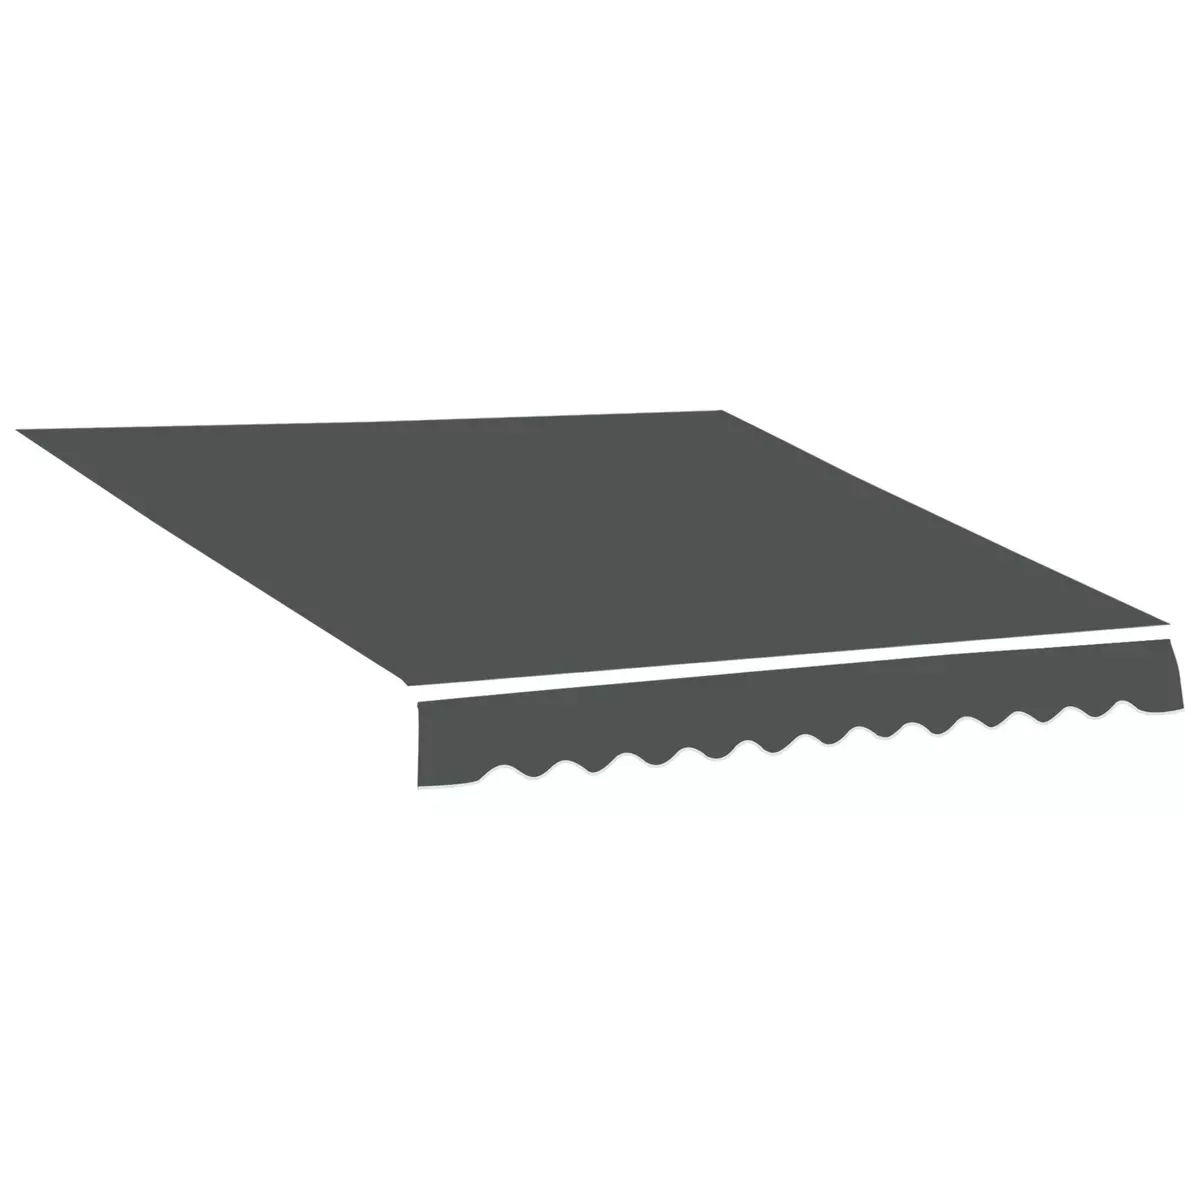 OUTSUNNY Toile de rechange store banne - lambrequin vagues douces - polyester haute densité 280 g/m² anti-UV dim. 3,82L x 2,4l (avancée) m gris